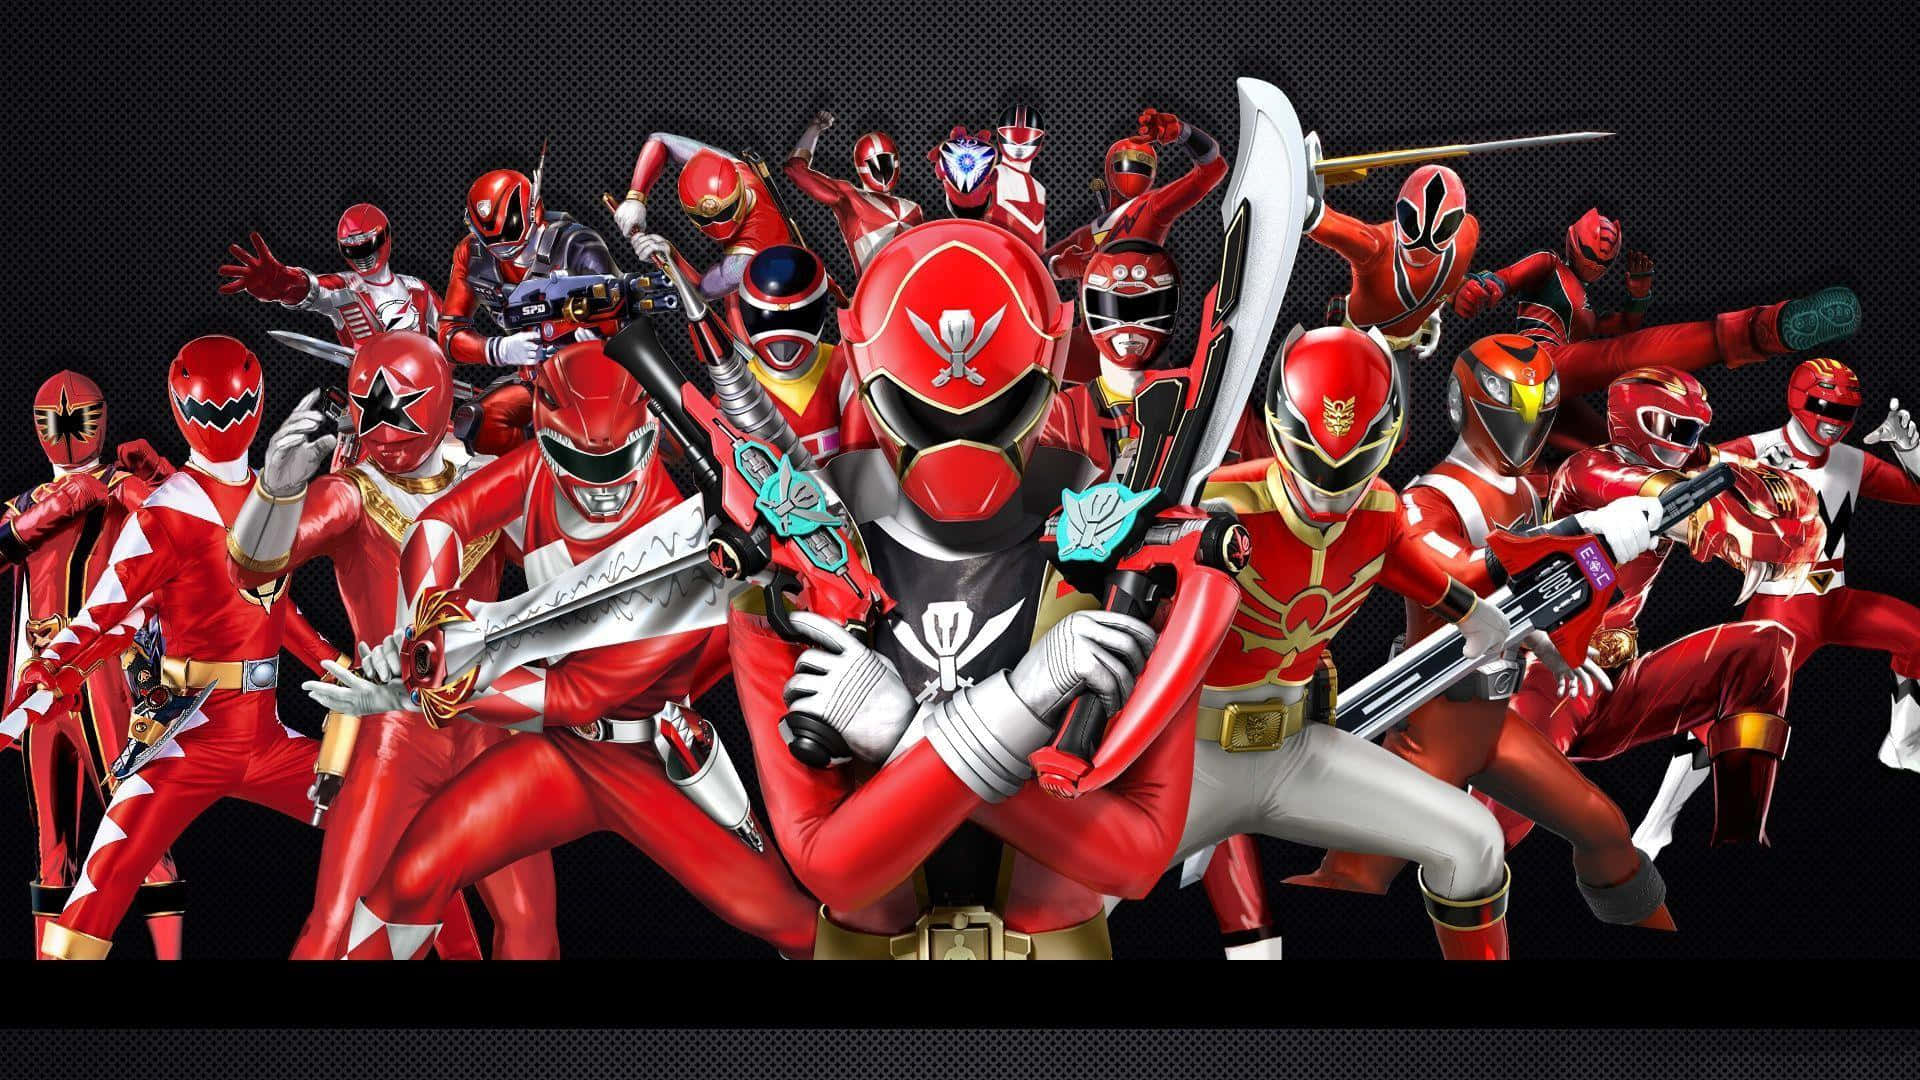 Red Ranger Assembly Wallpaper